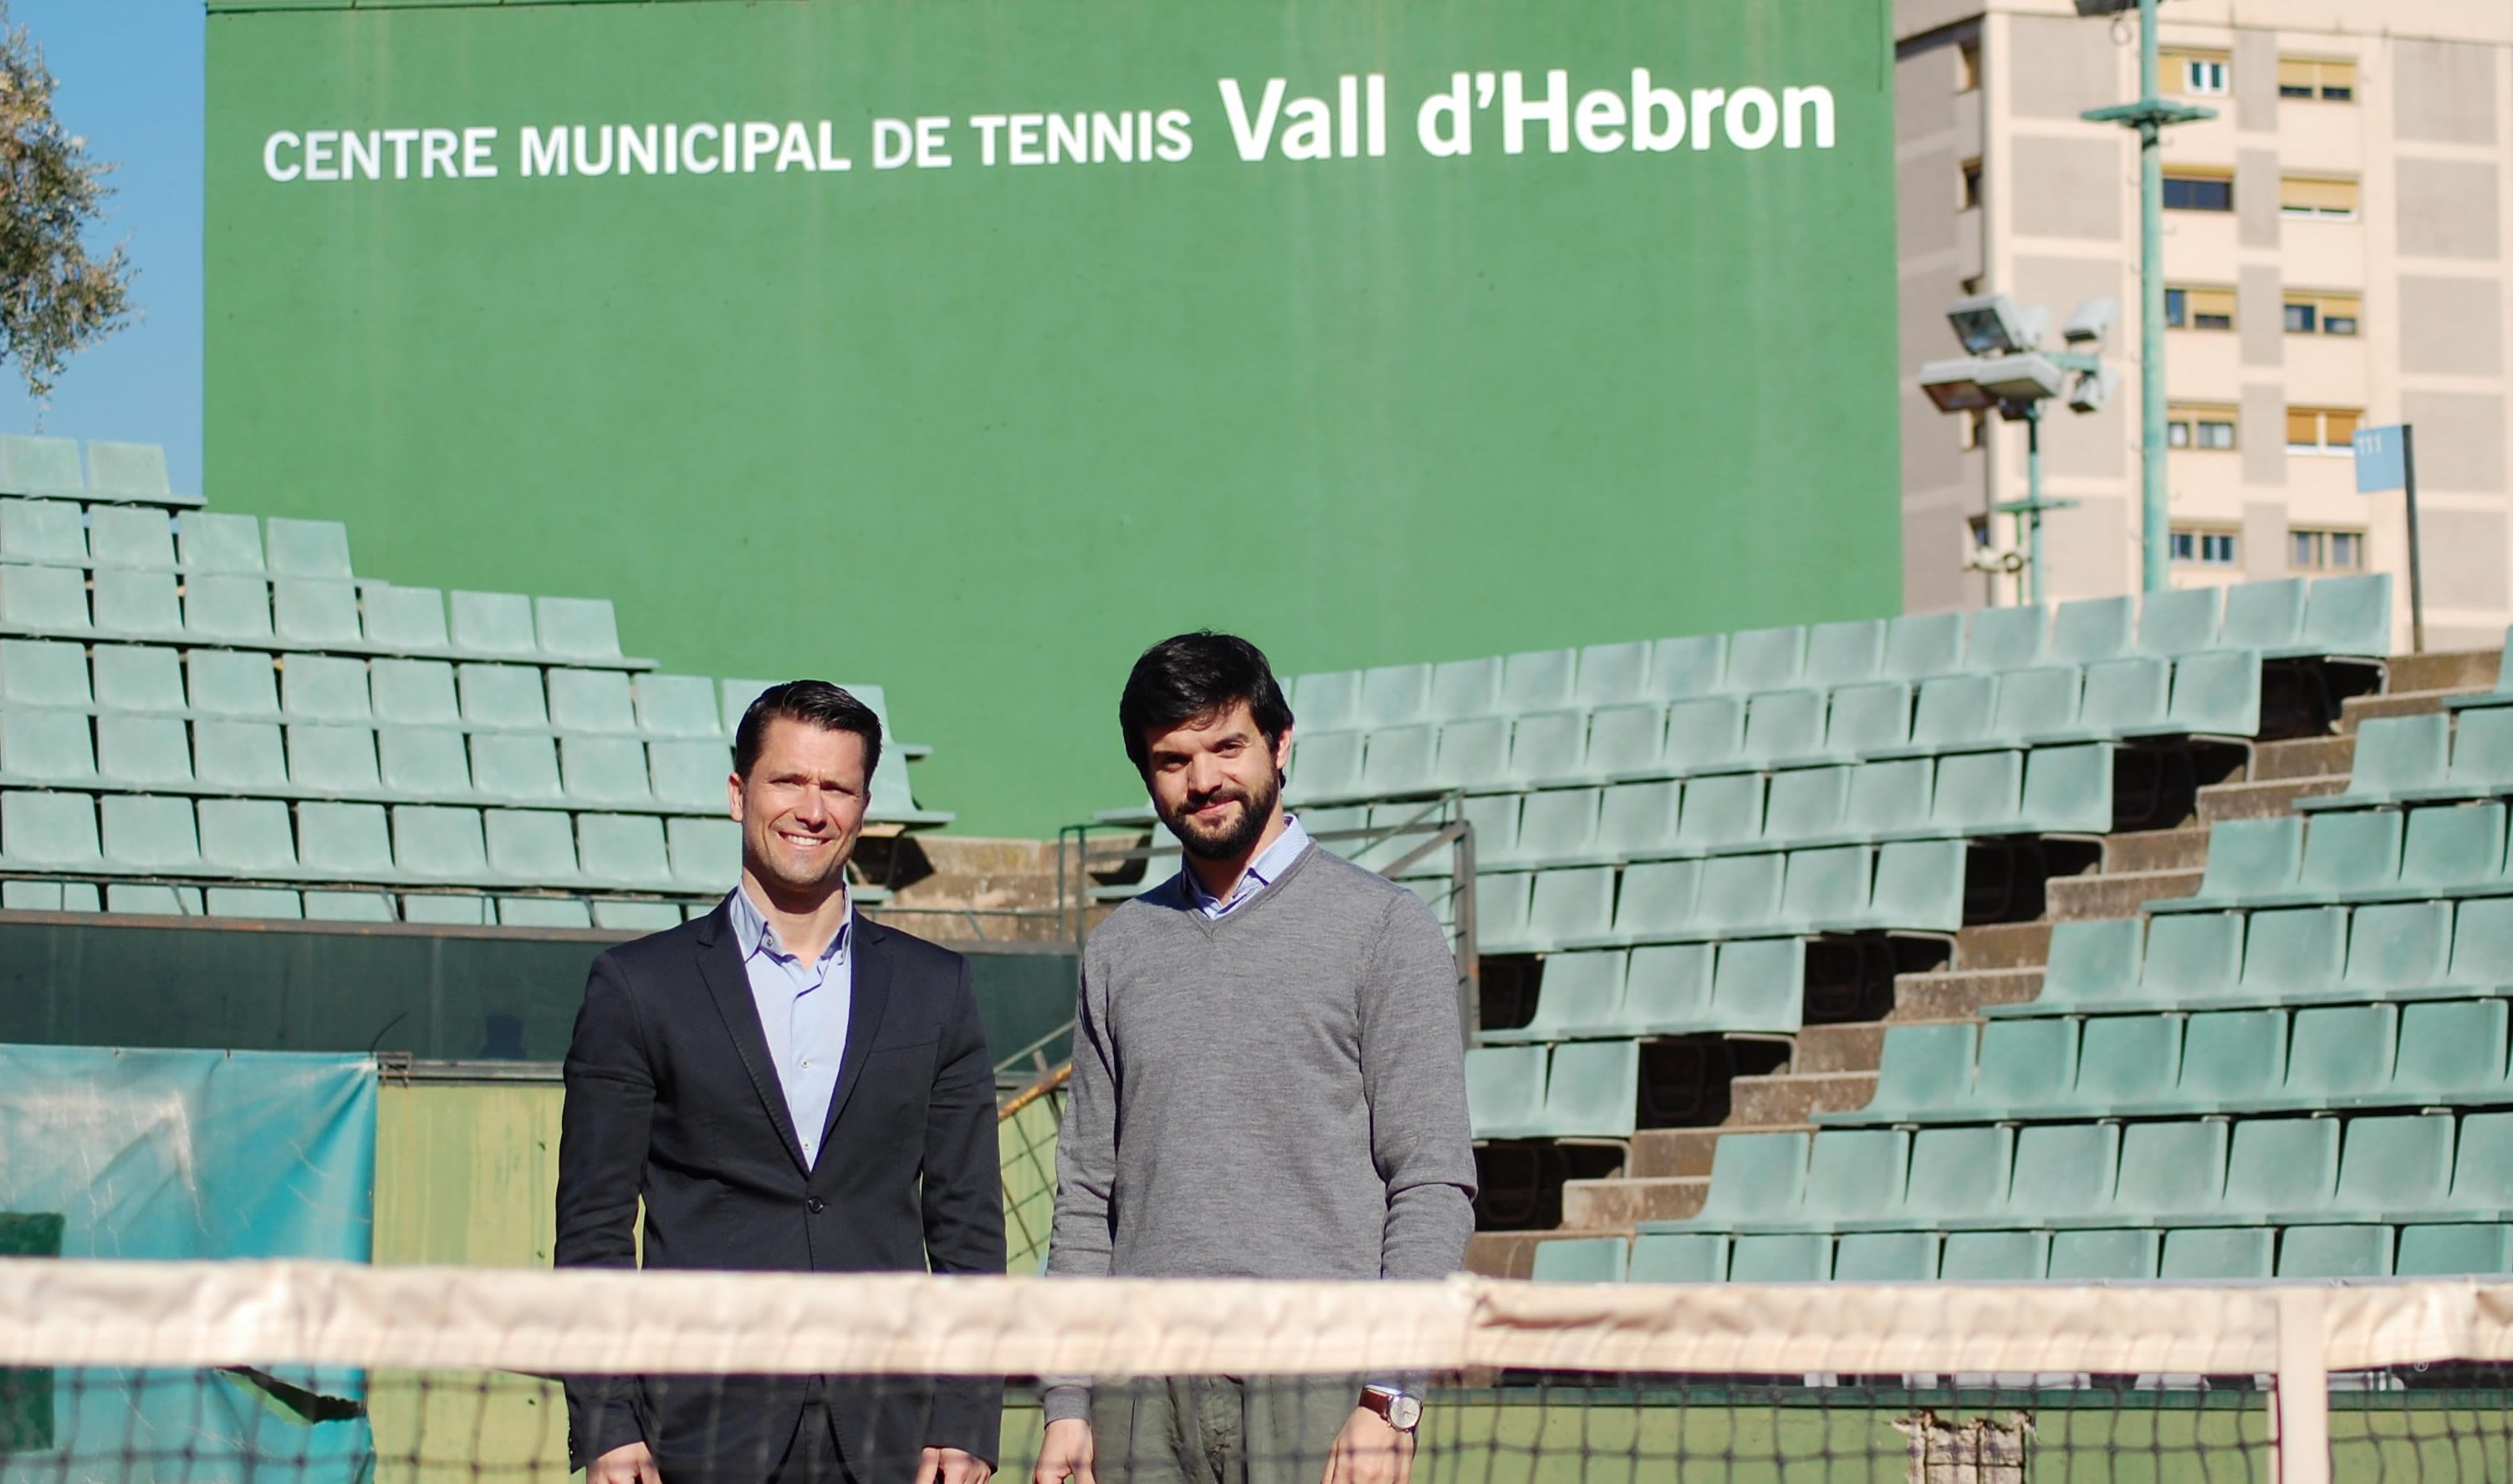 La UFEC i la FCT gestionaran el Centre Municipal de Tennis Vall d’Hebron